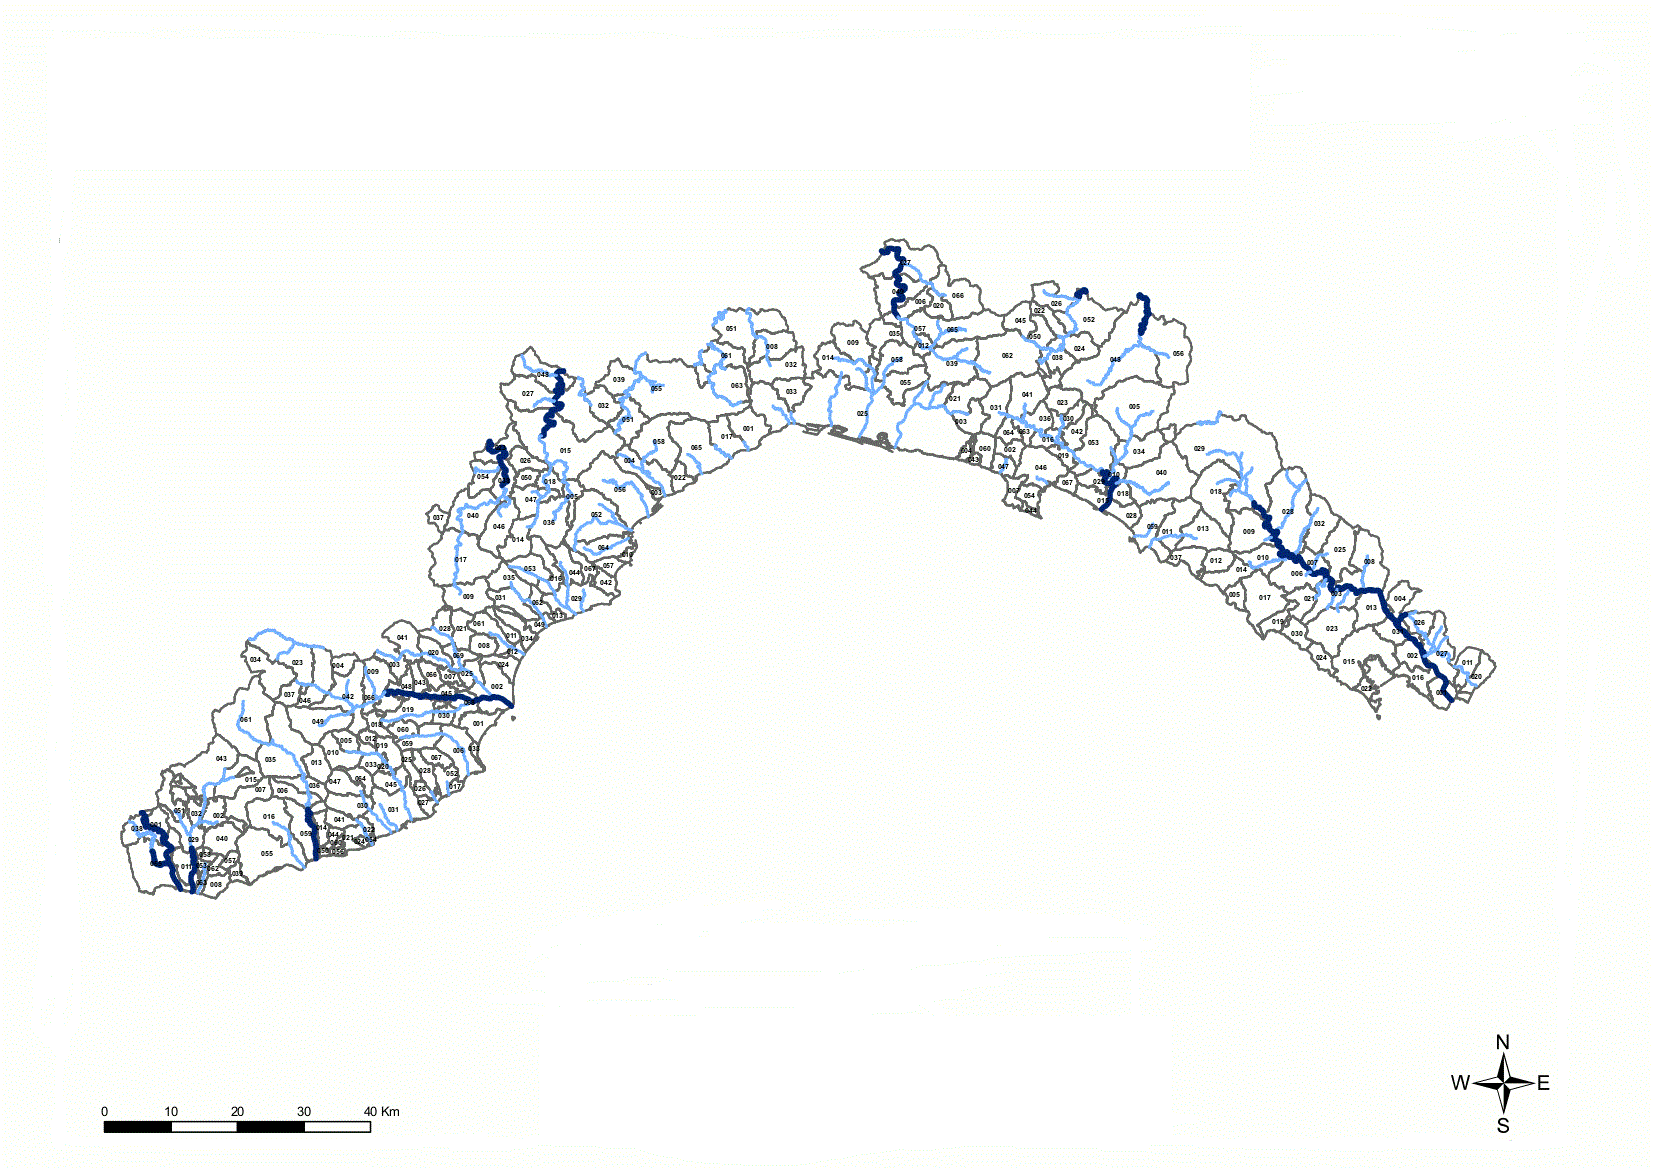 Suddivisione dei bacini idrografici della Liguria nelle tre classi: bacini piccoli, bacini medi e bacini grandi